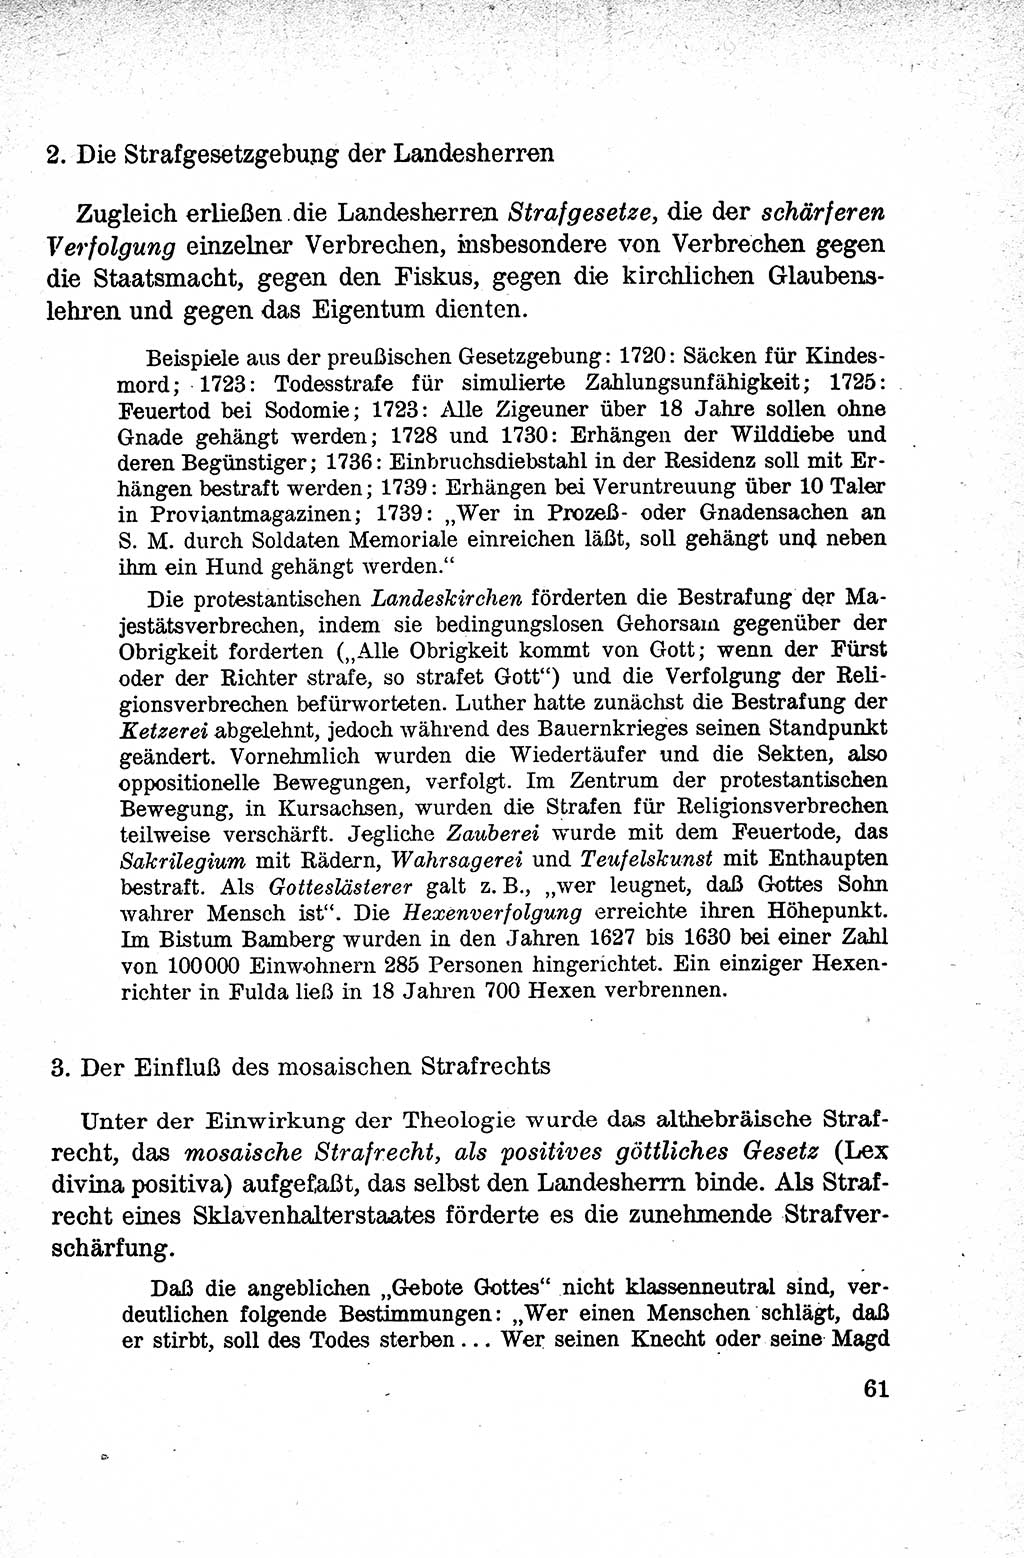 Lehrbuch des Strafrechts der Deutschen Demokratischen Republik (DDR), Allgemeiner Teil 1959, Seite 61 (Lb. Strafr. DDR AT 1959, S. 61)